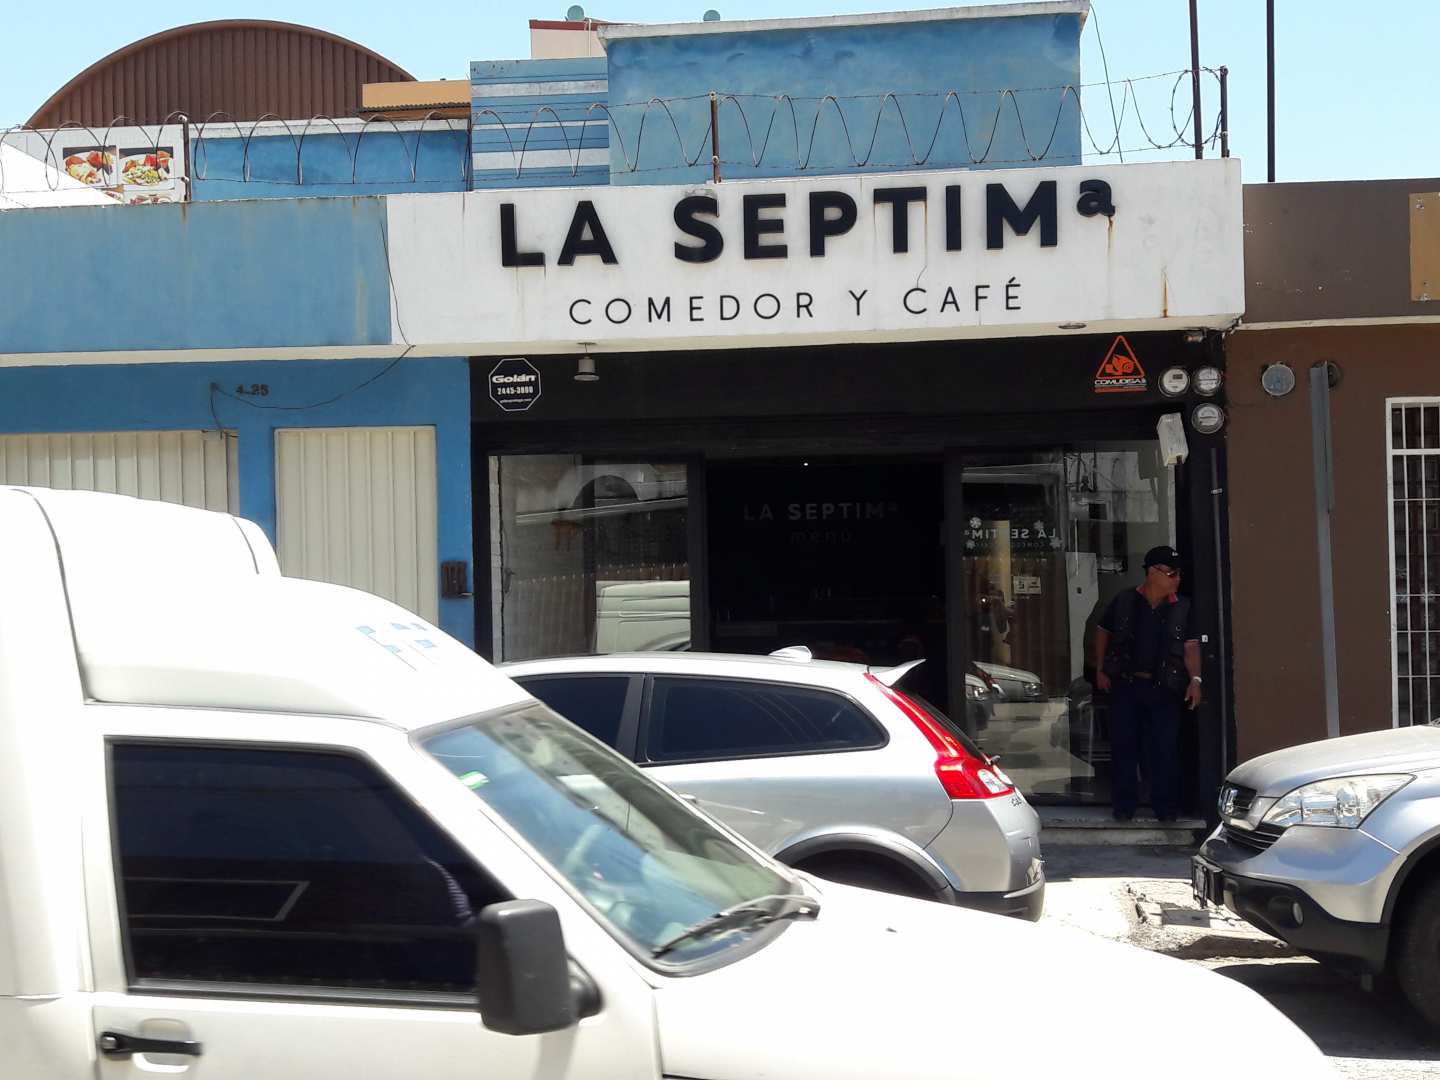 La Septima